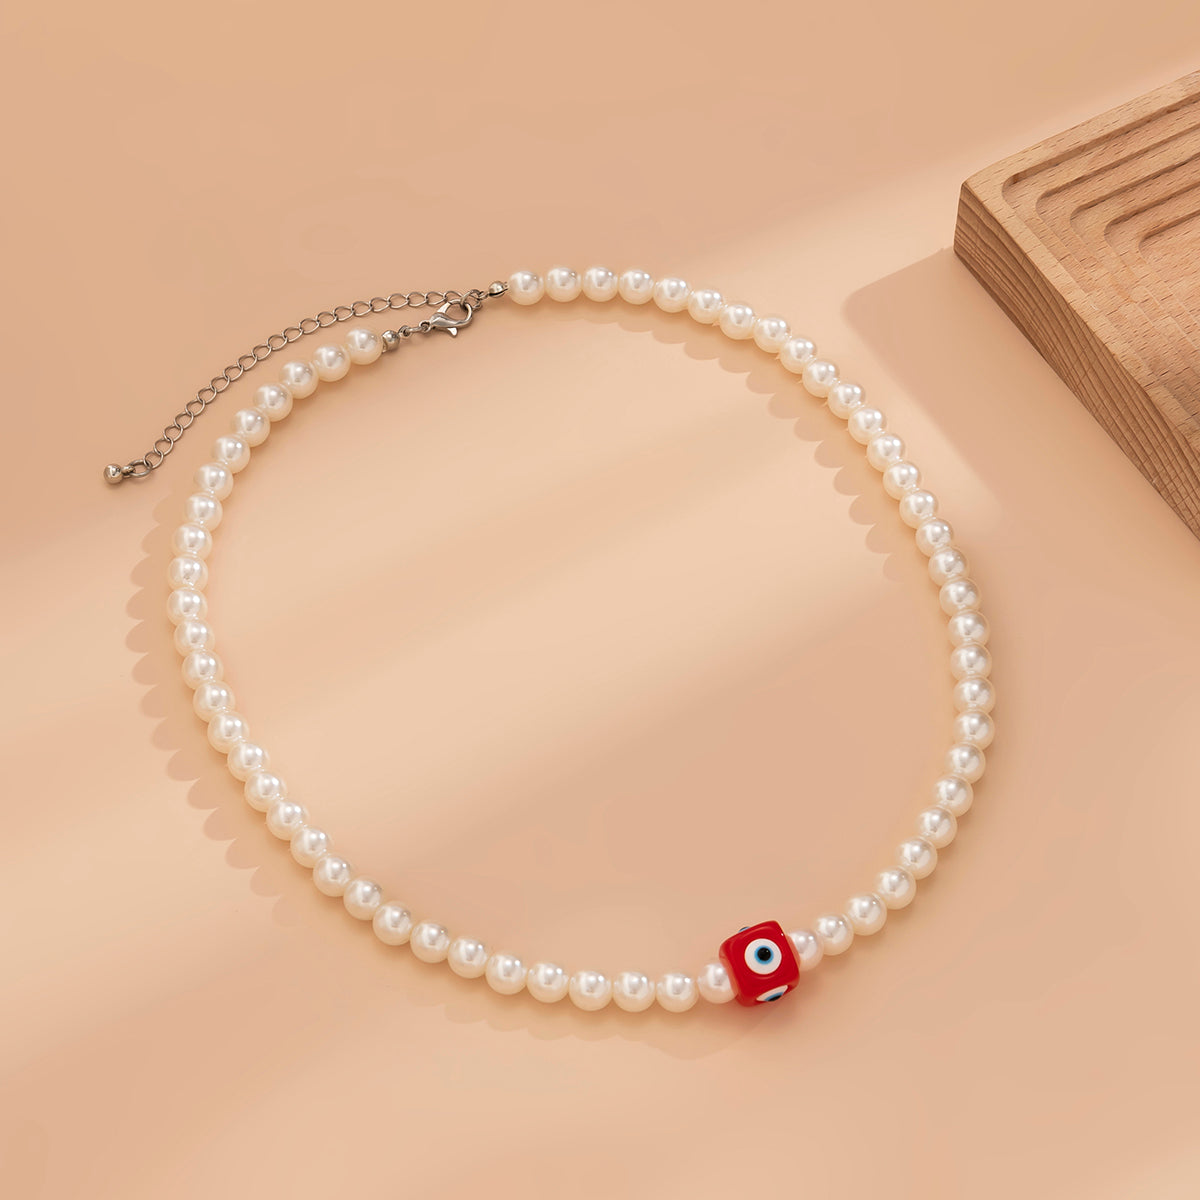 Retro Eye Arylic Copper Handmade Artificial Pearls Pendant Necklace 1 Piece